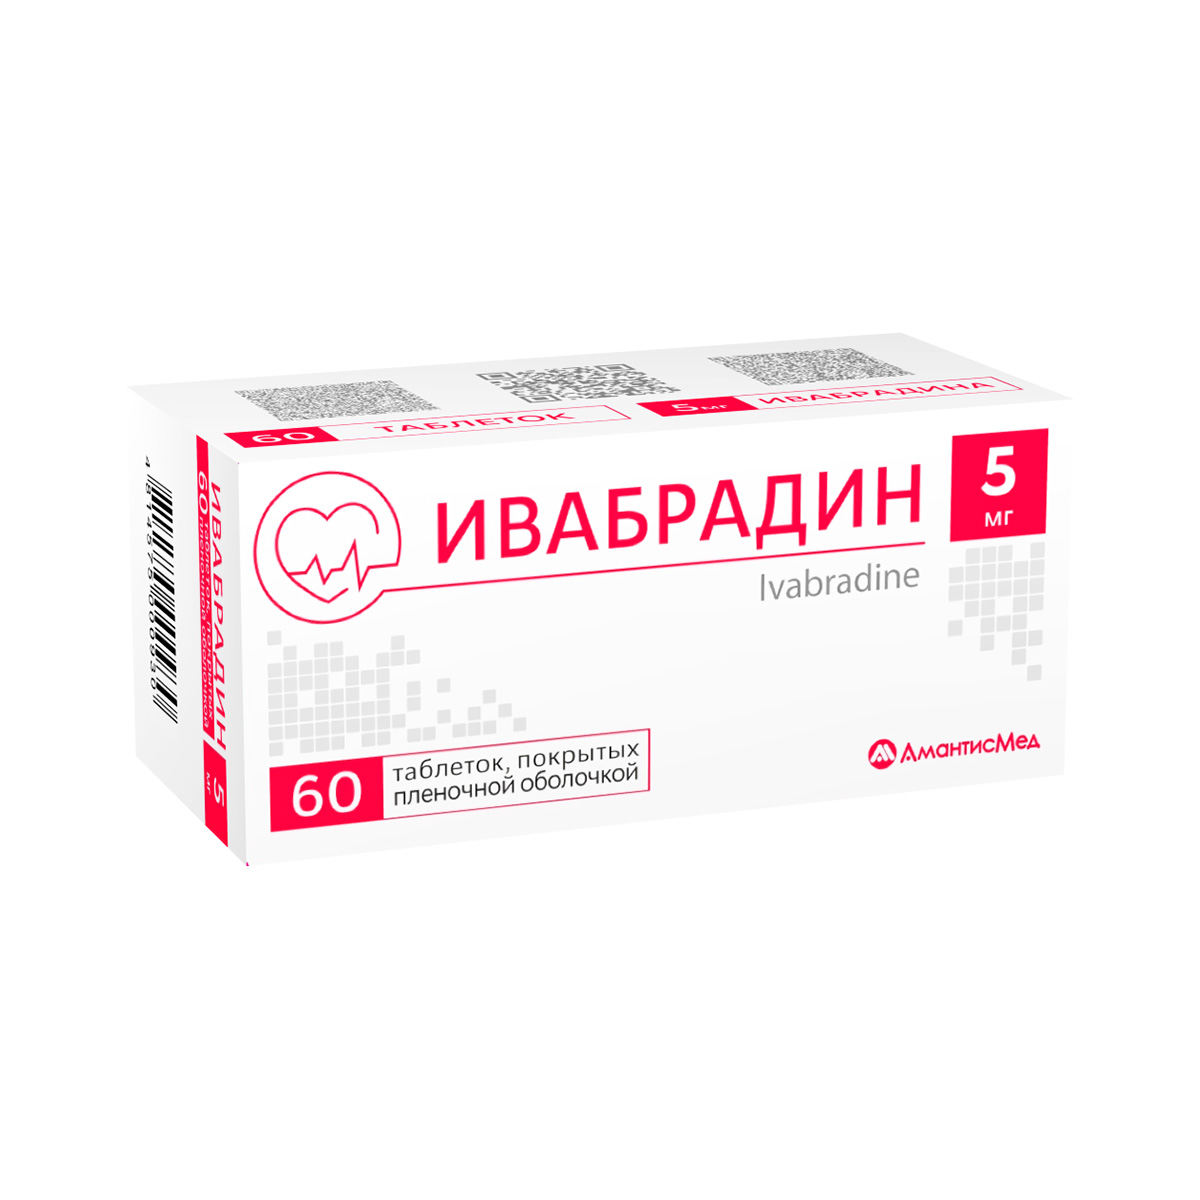 Ивабрадин 5 мг таблетки покрытые пленочной оболочкой 60 шт